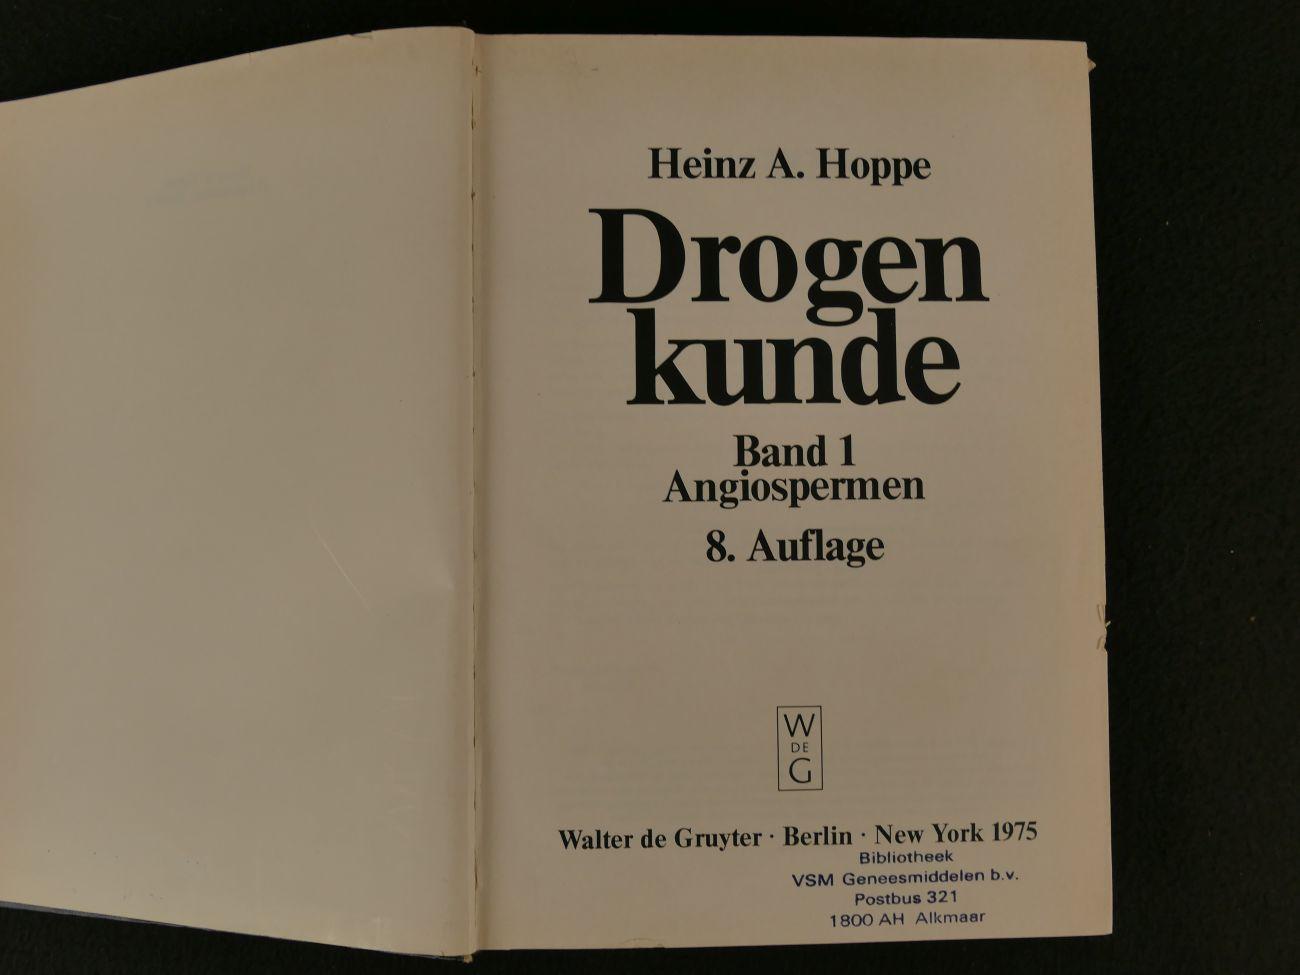 Hoppe, Heinz A. - Drogenkunde. Angiospermen Band 1 (3 foto's)